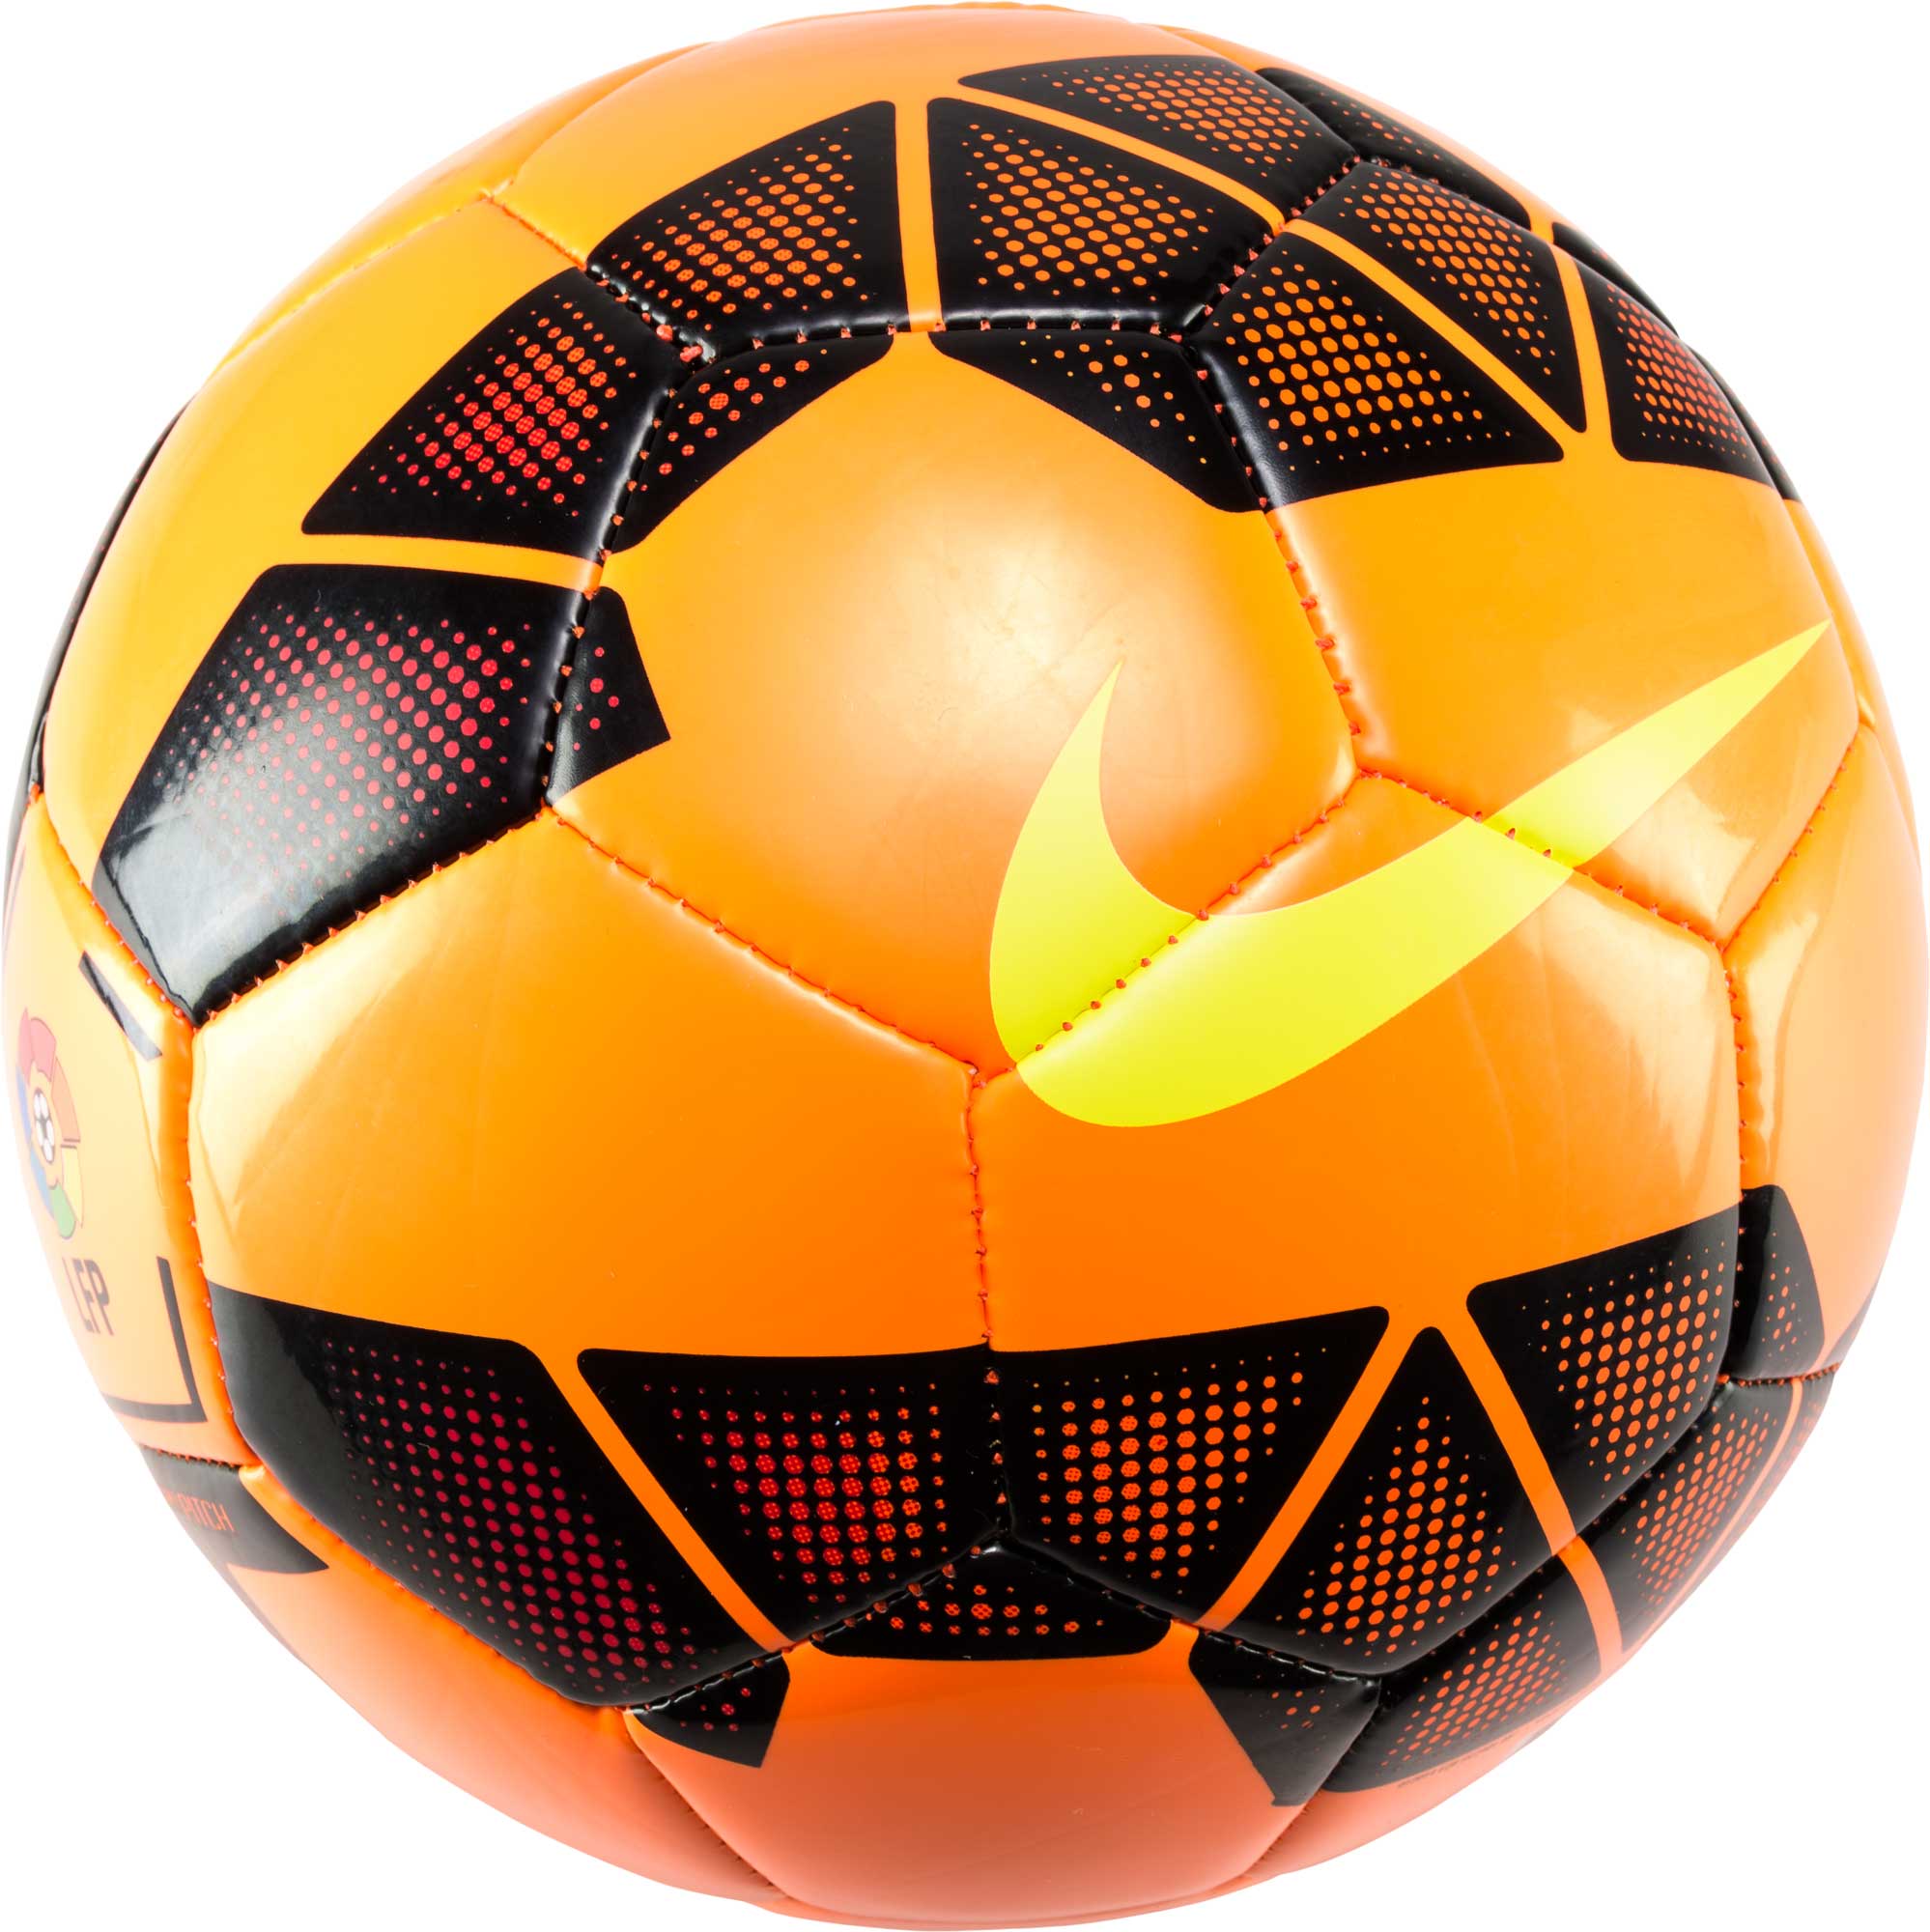 Nike Soccer Ball Designs